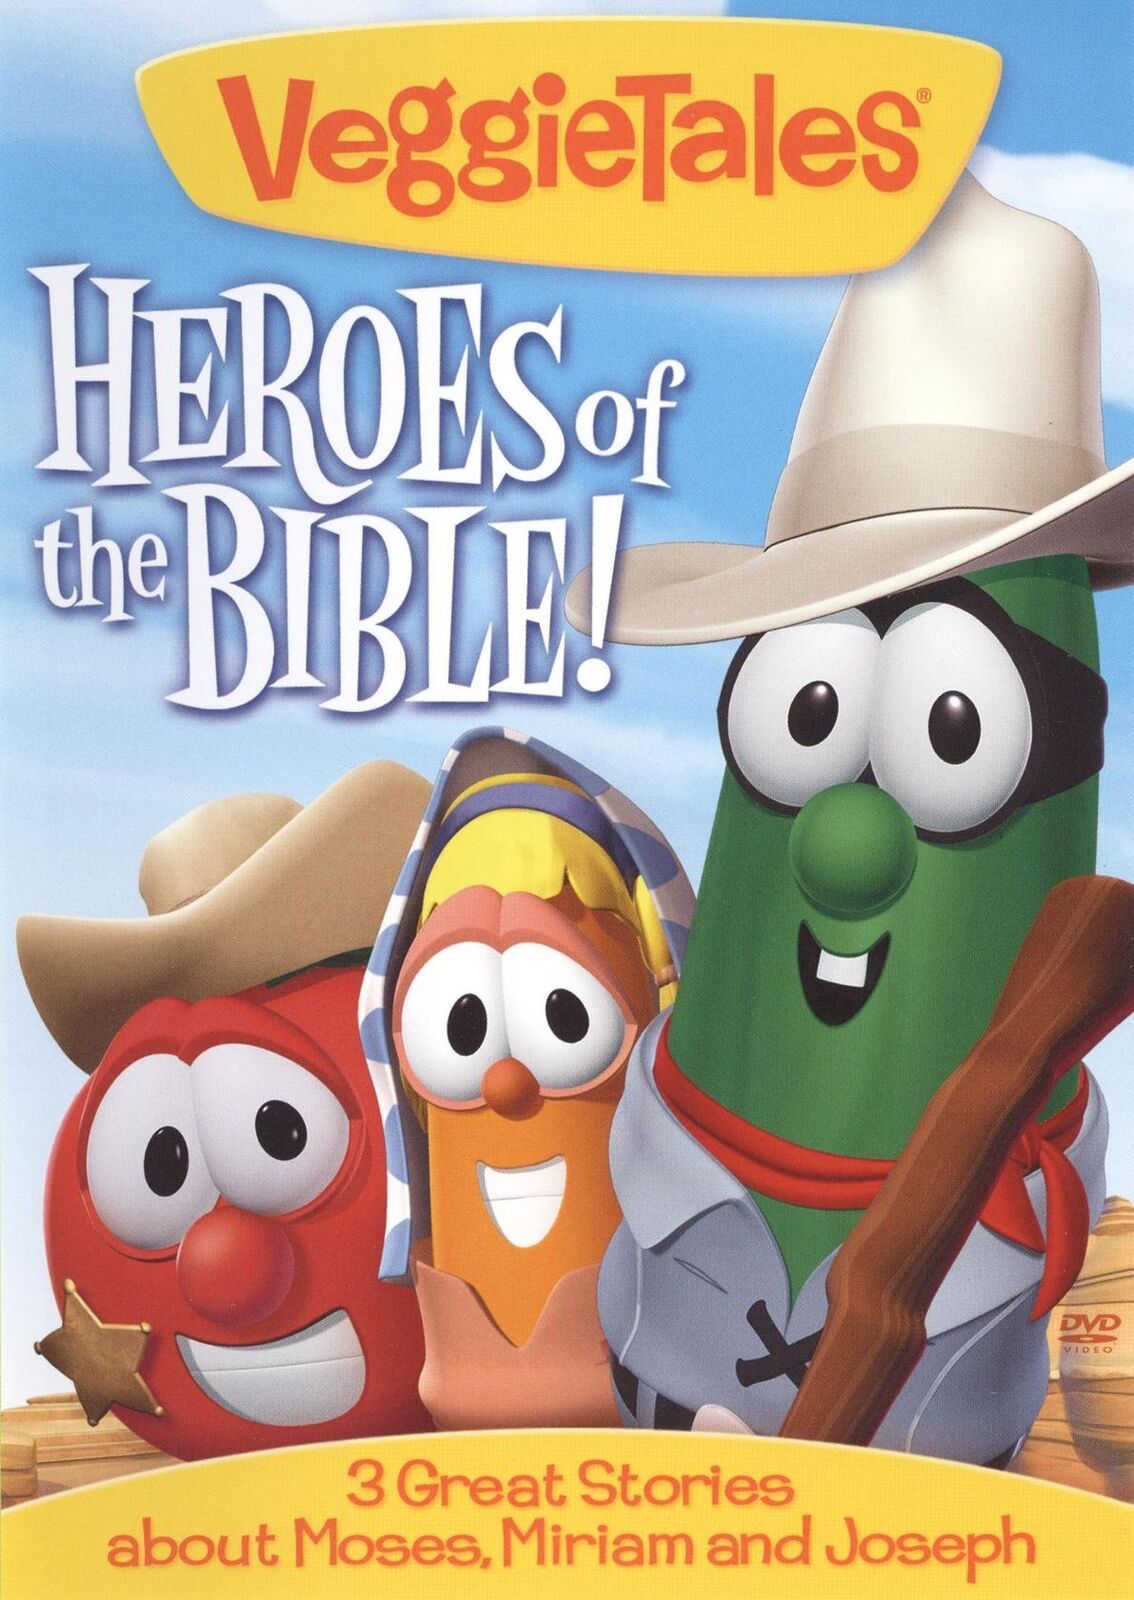 VeggieTales: Heroes of the Bible - DVD